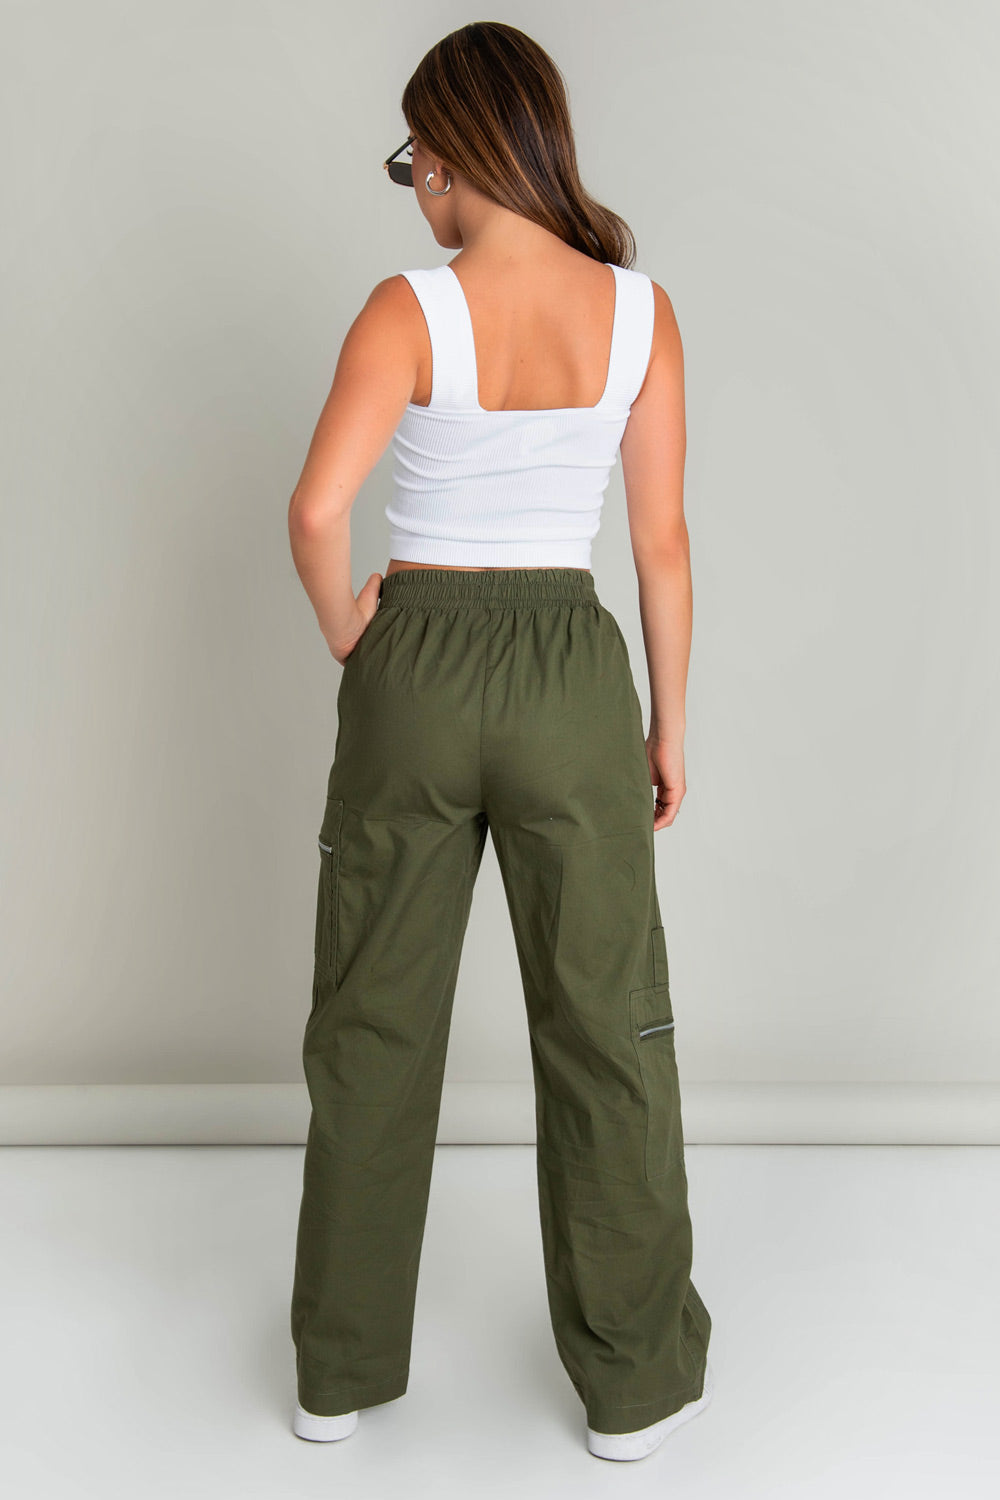 Pantalón cargo de fit recto, cintura alta con pretina elástica, bolsillos delanteros y laterales cargo con cremallera en contraste. Detalle de costuras frontales.